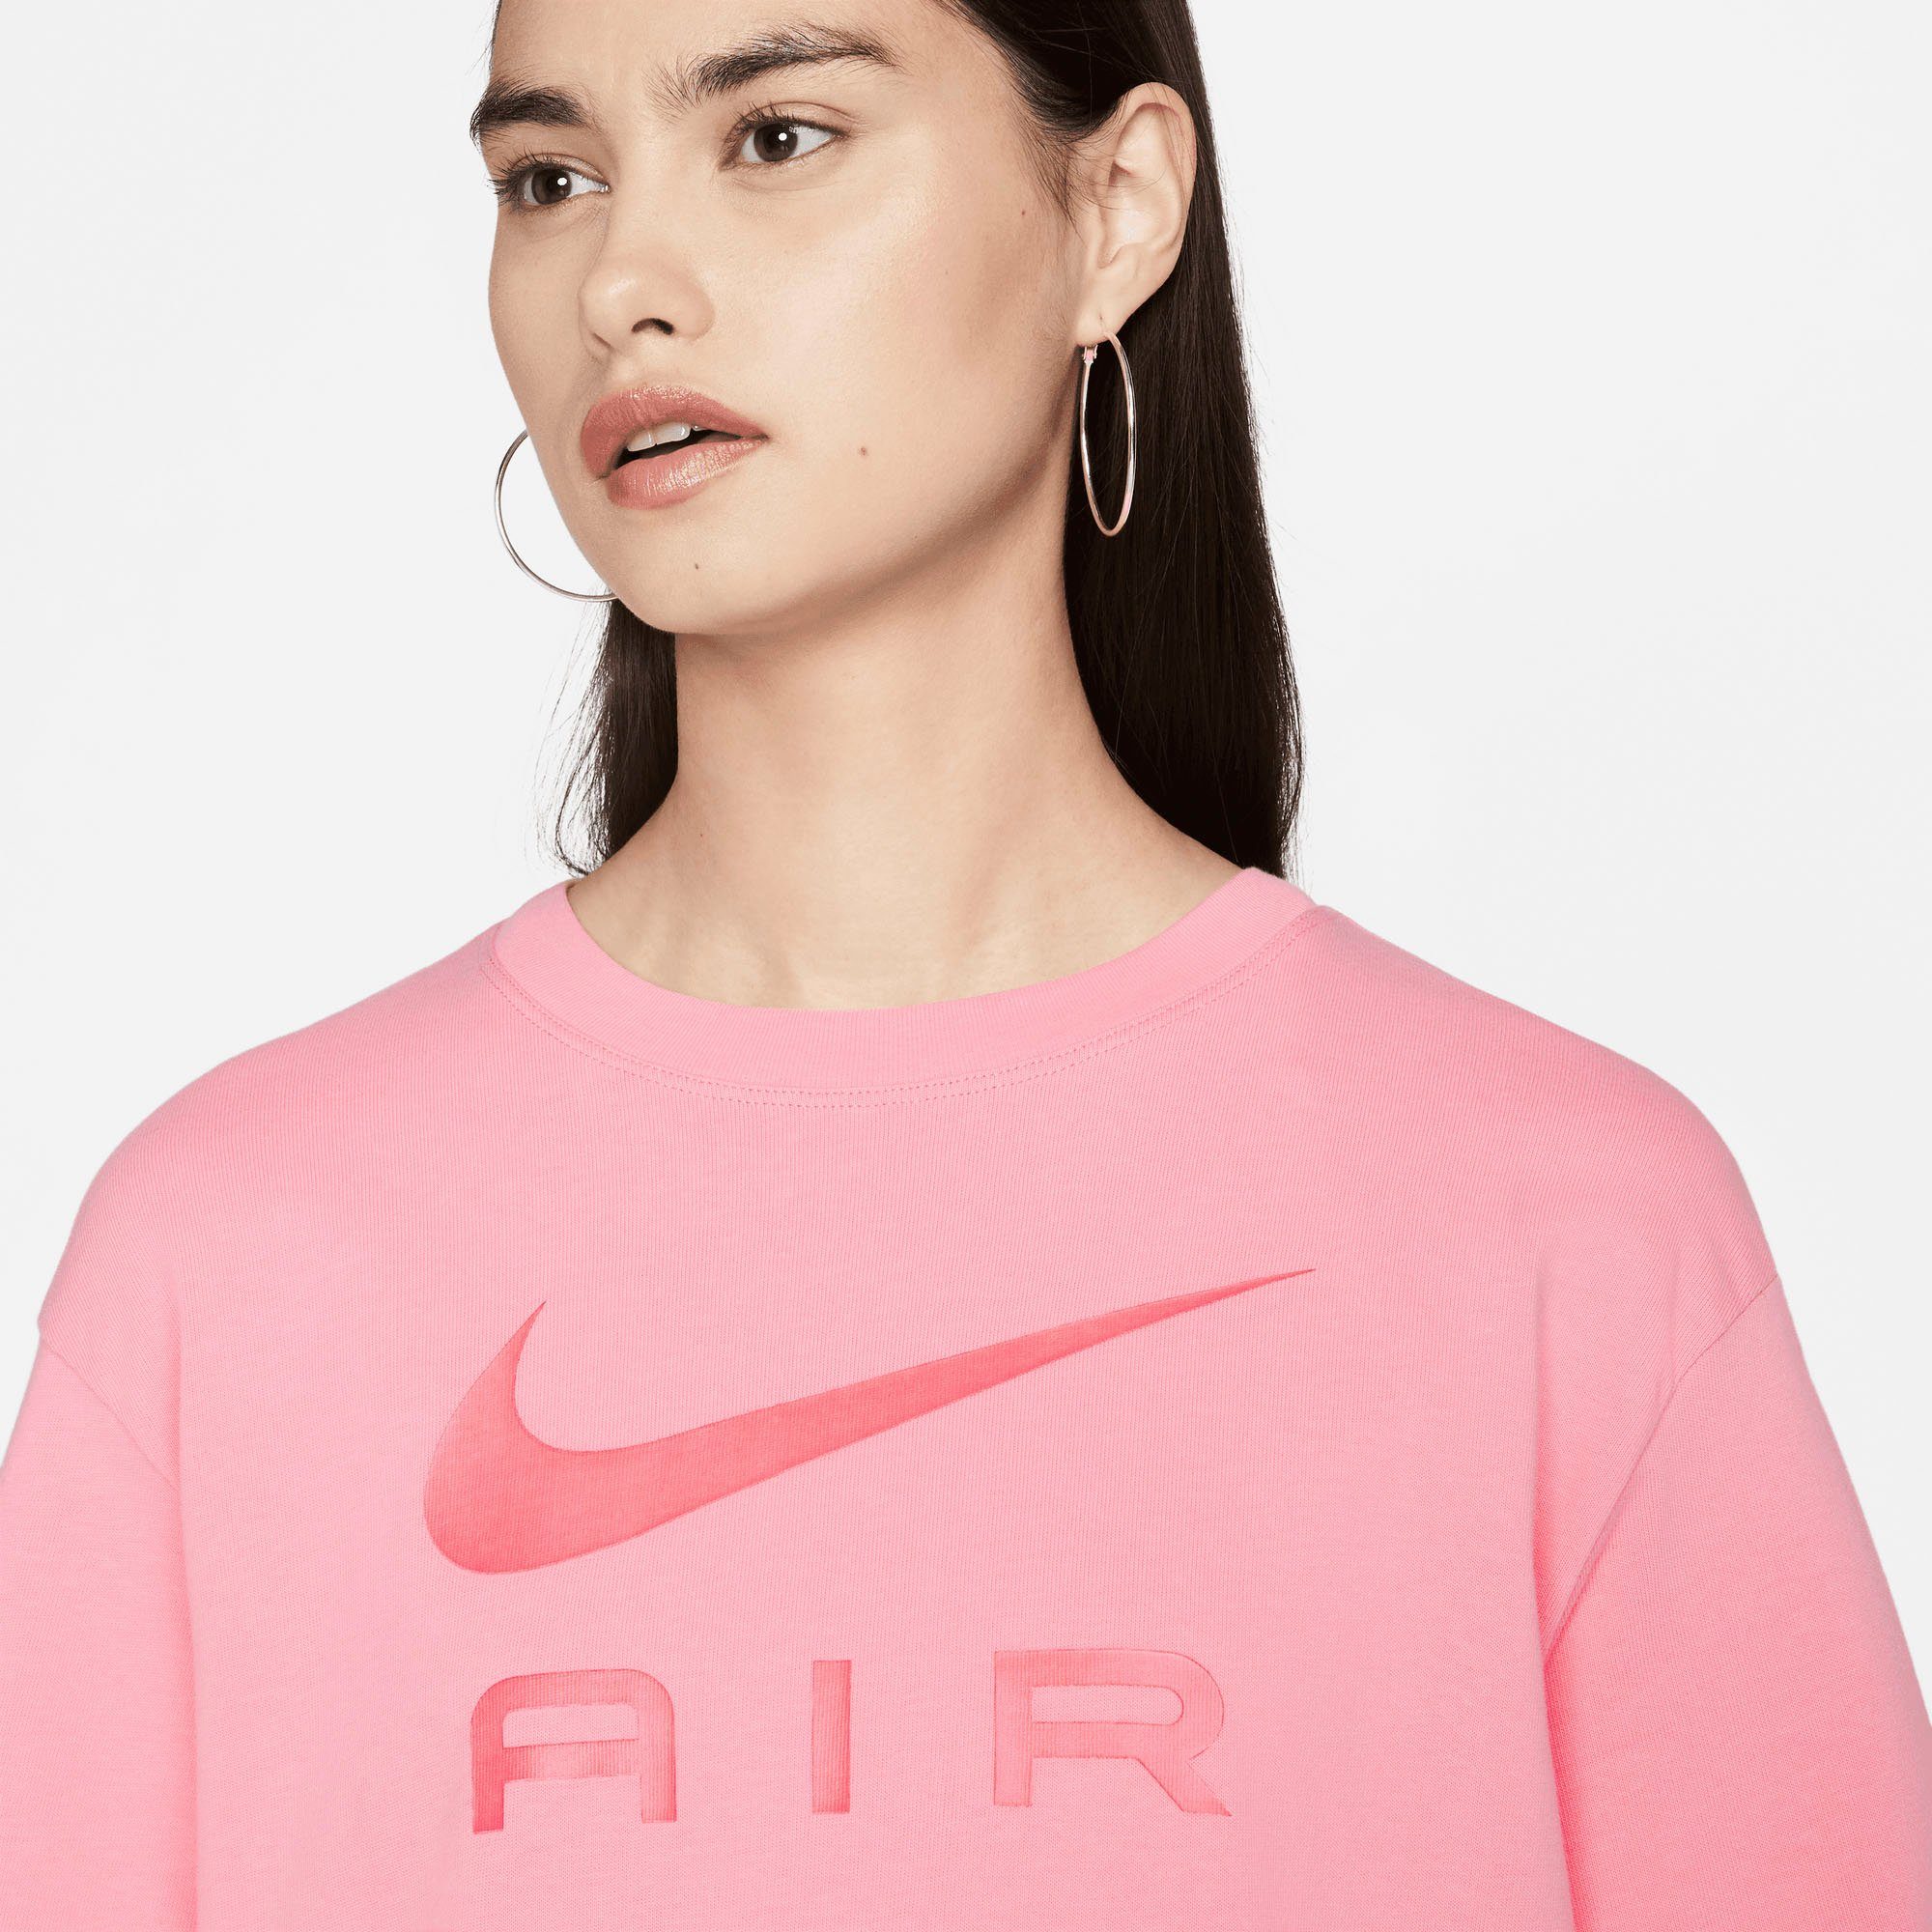 Nike Sportswear T-Shirt Air Women's T-Shirt rot